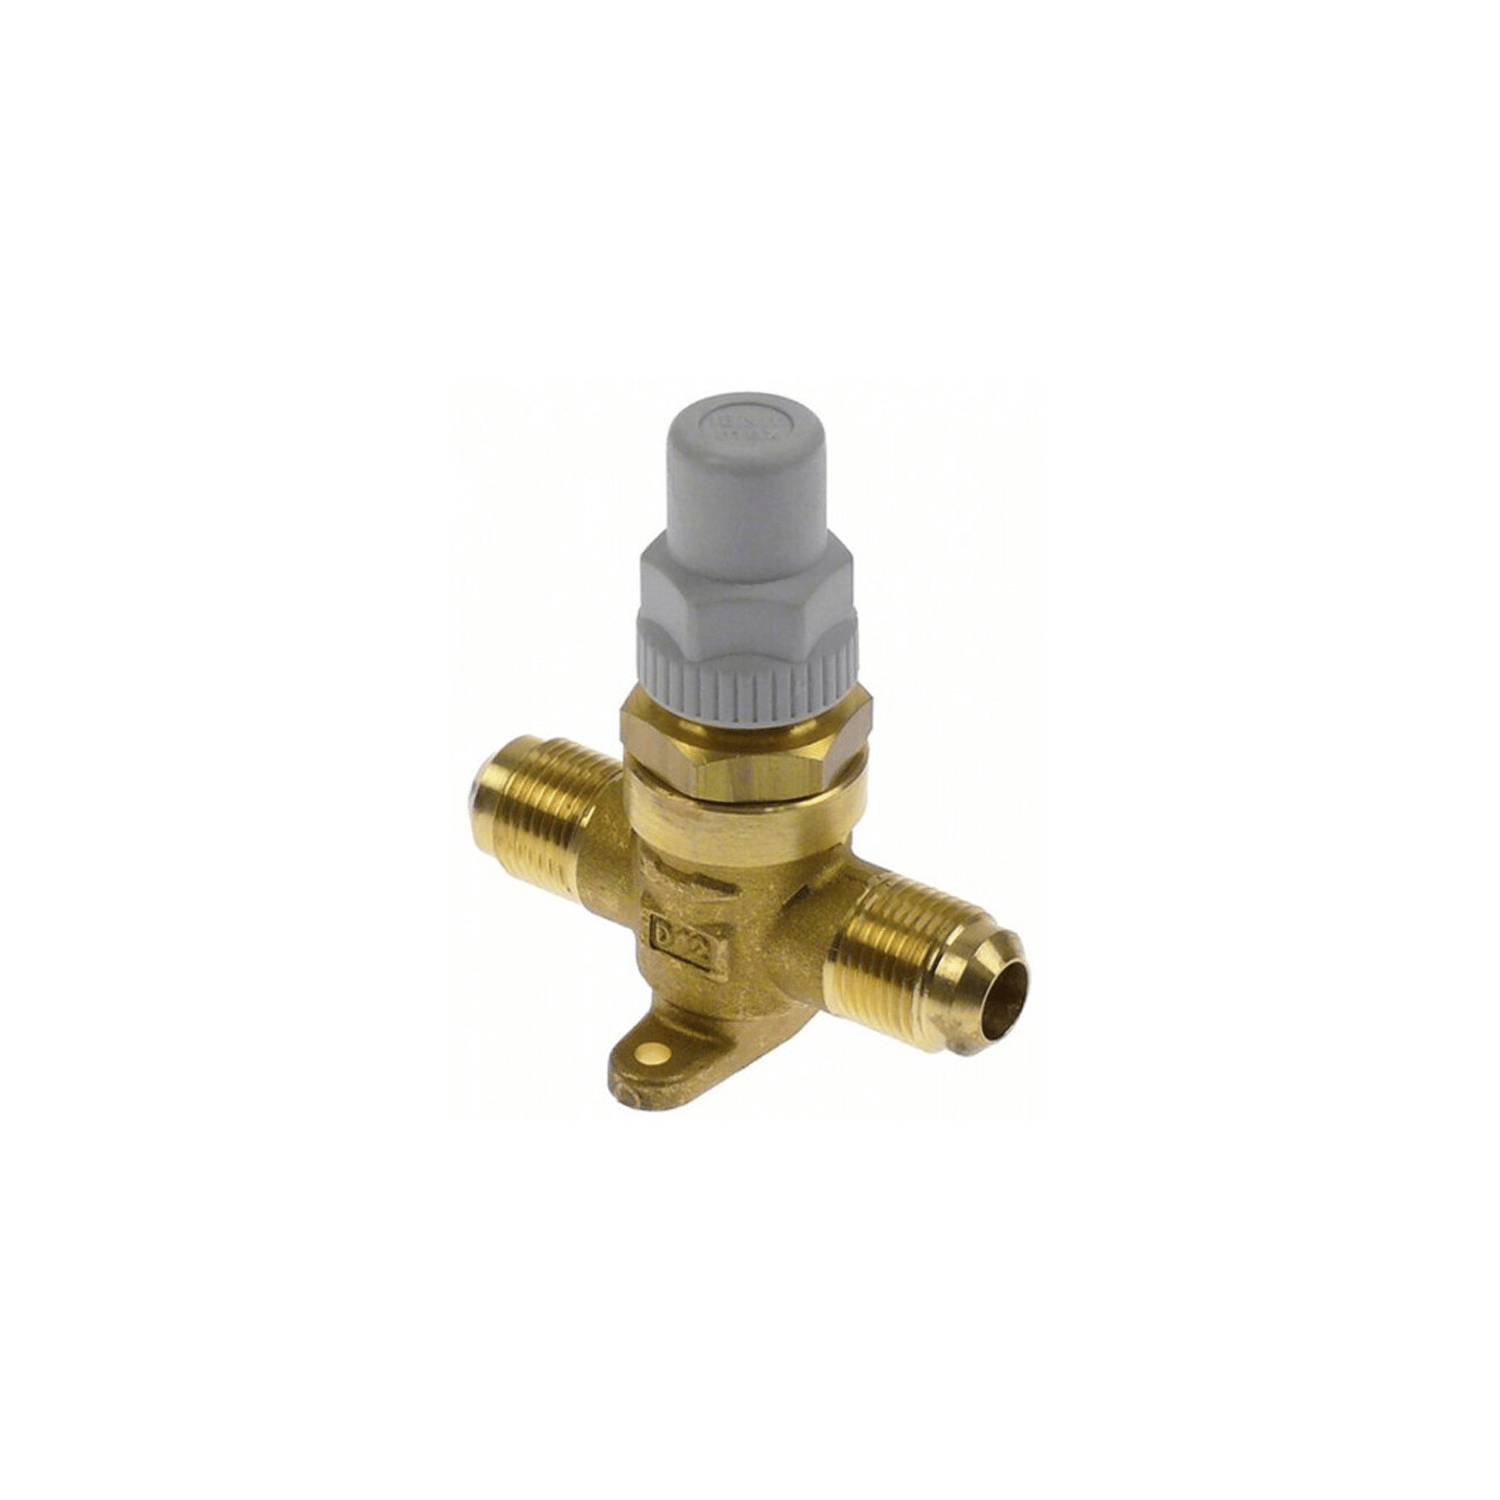 Shut-off valve Castel 6410/4, 1/2 "SAE